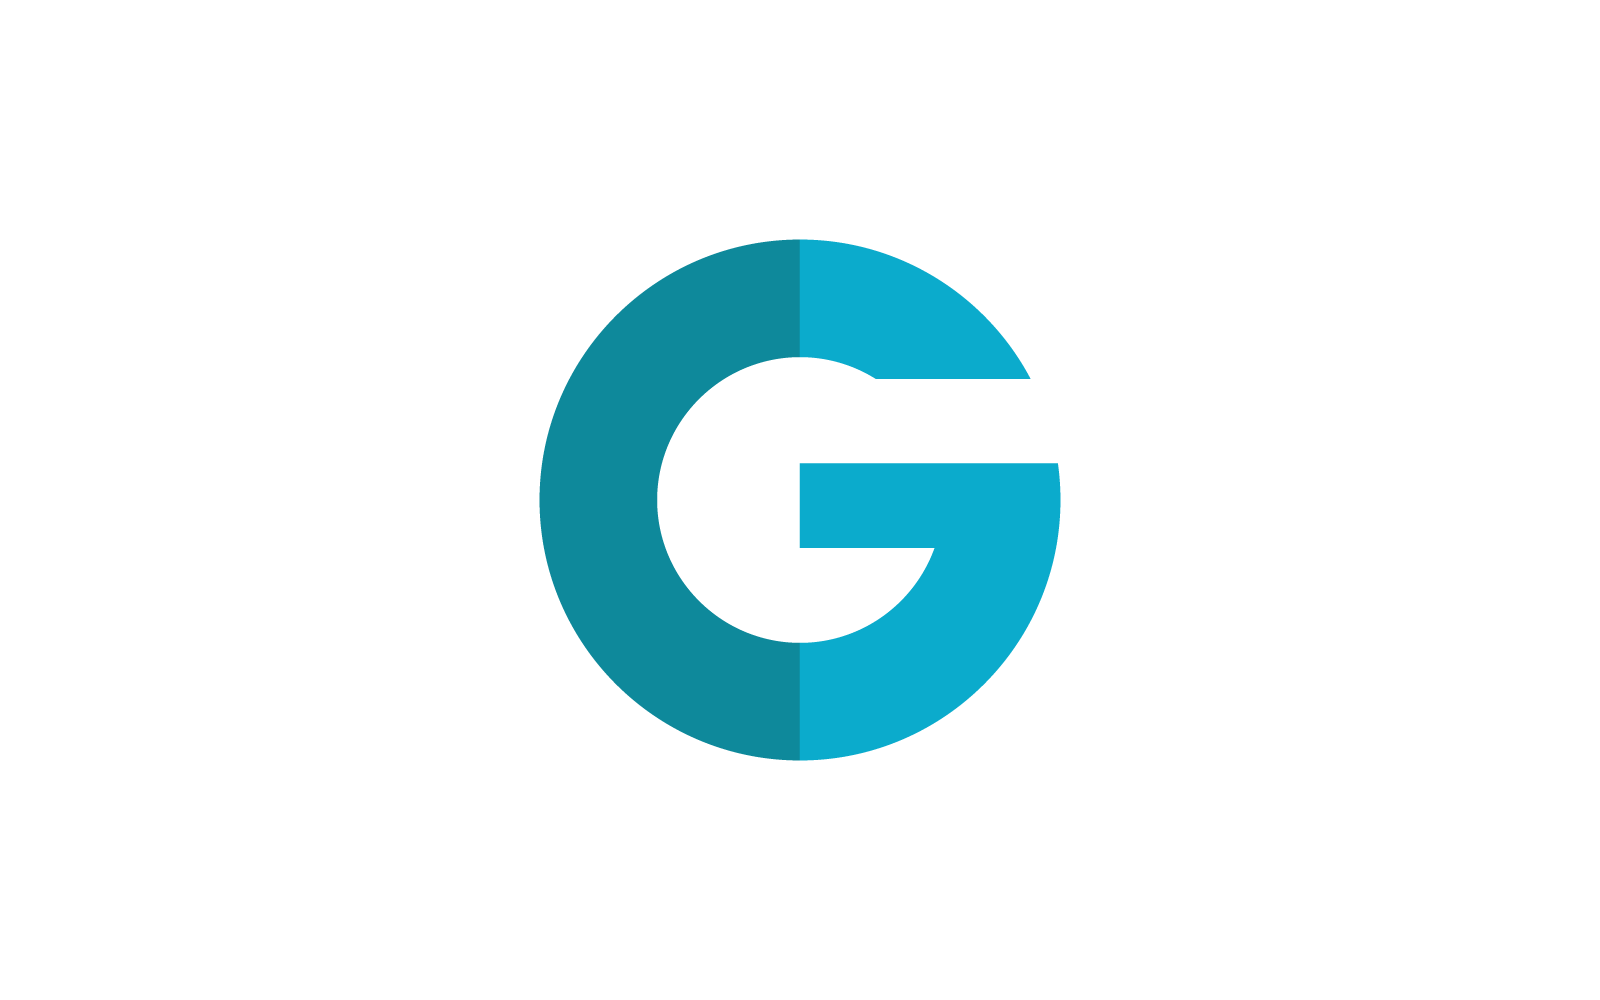 G letter logo vector template